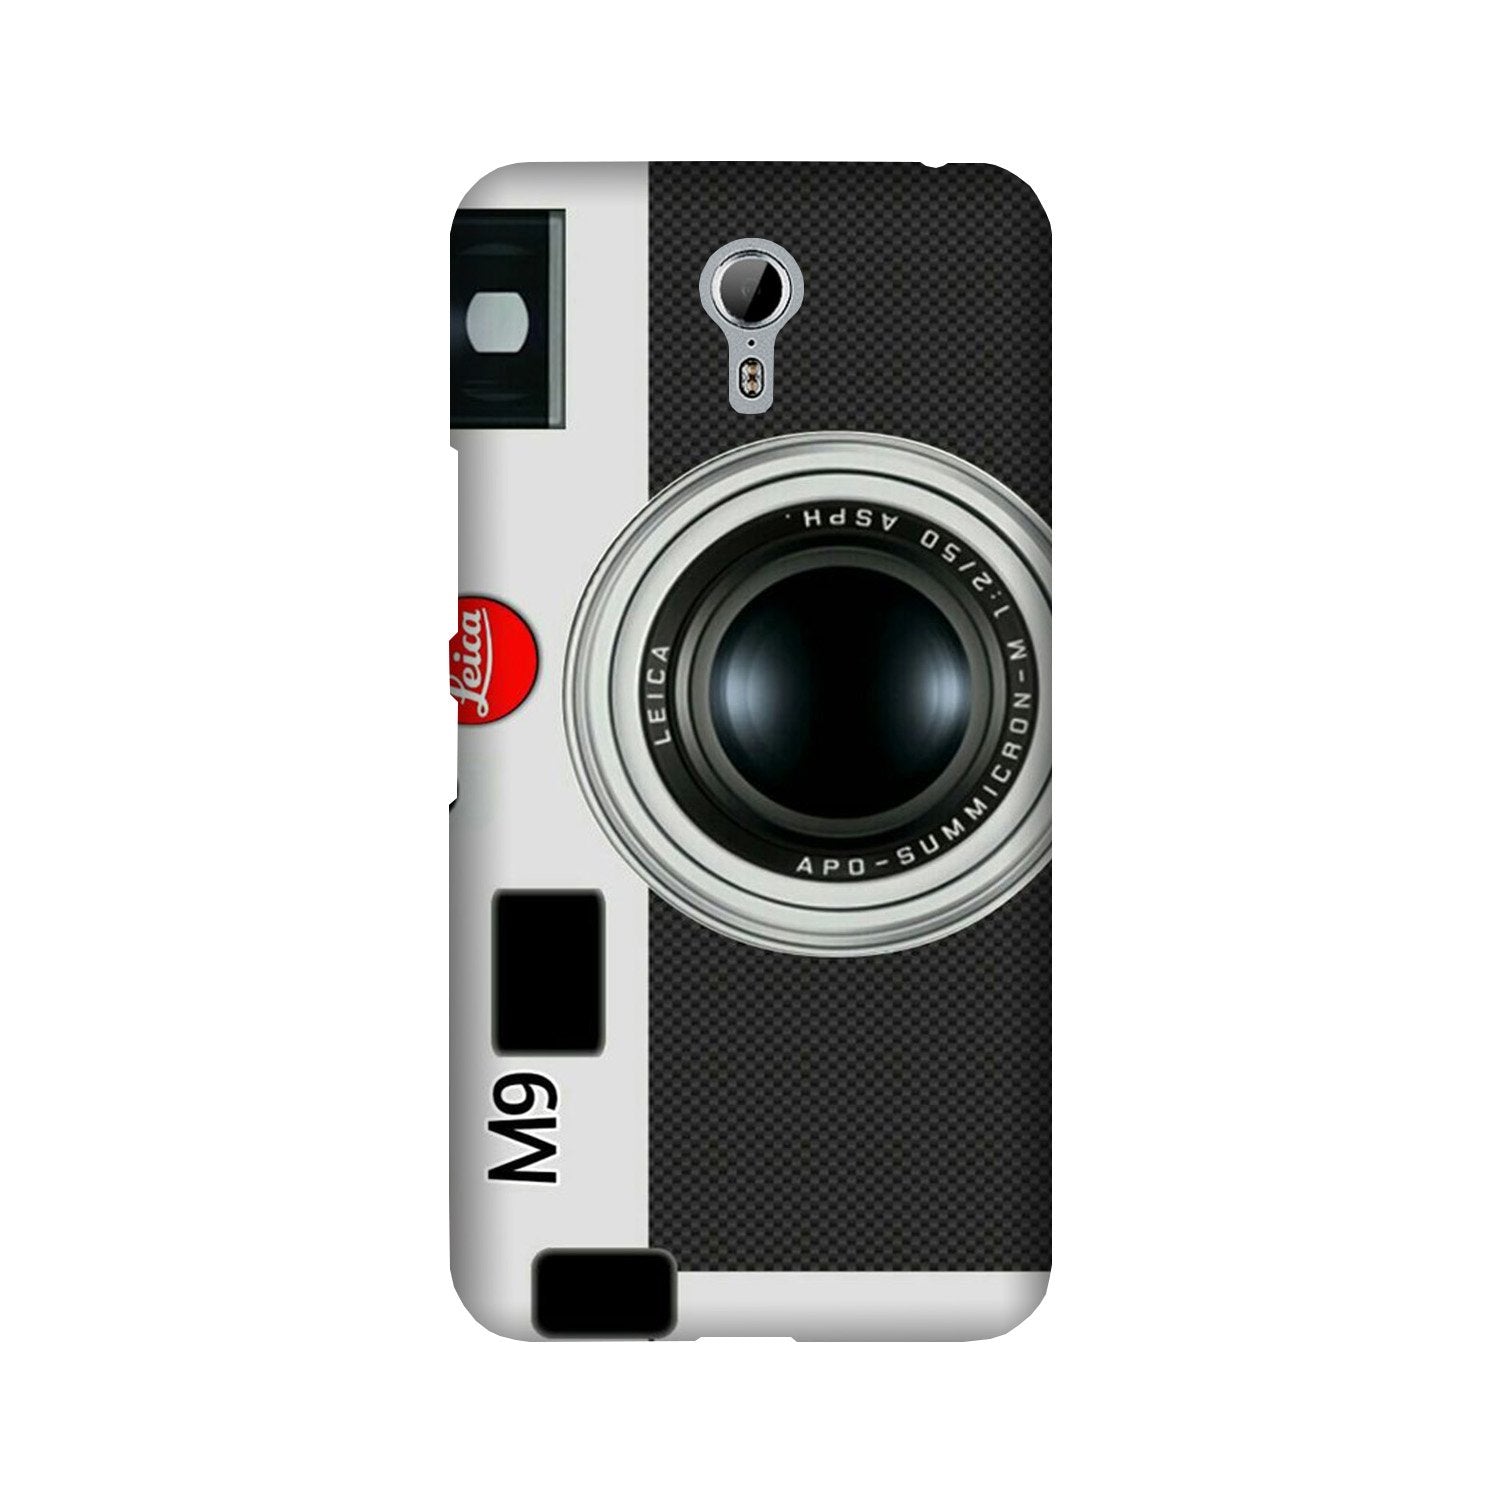 Camera Case for Lenovo Zuk Z1 (Design No. 257)